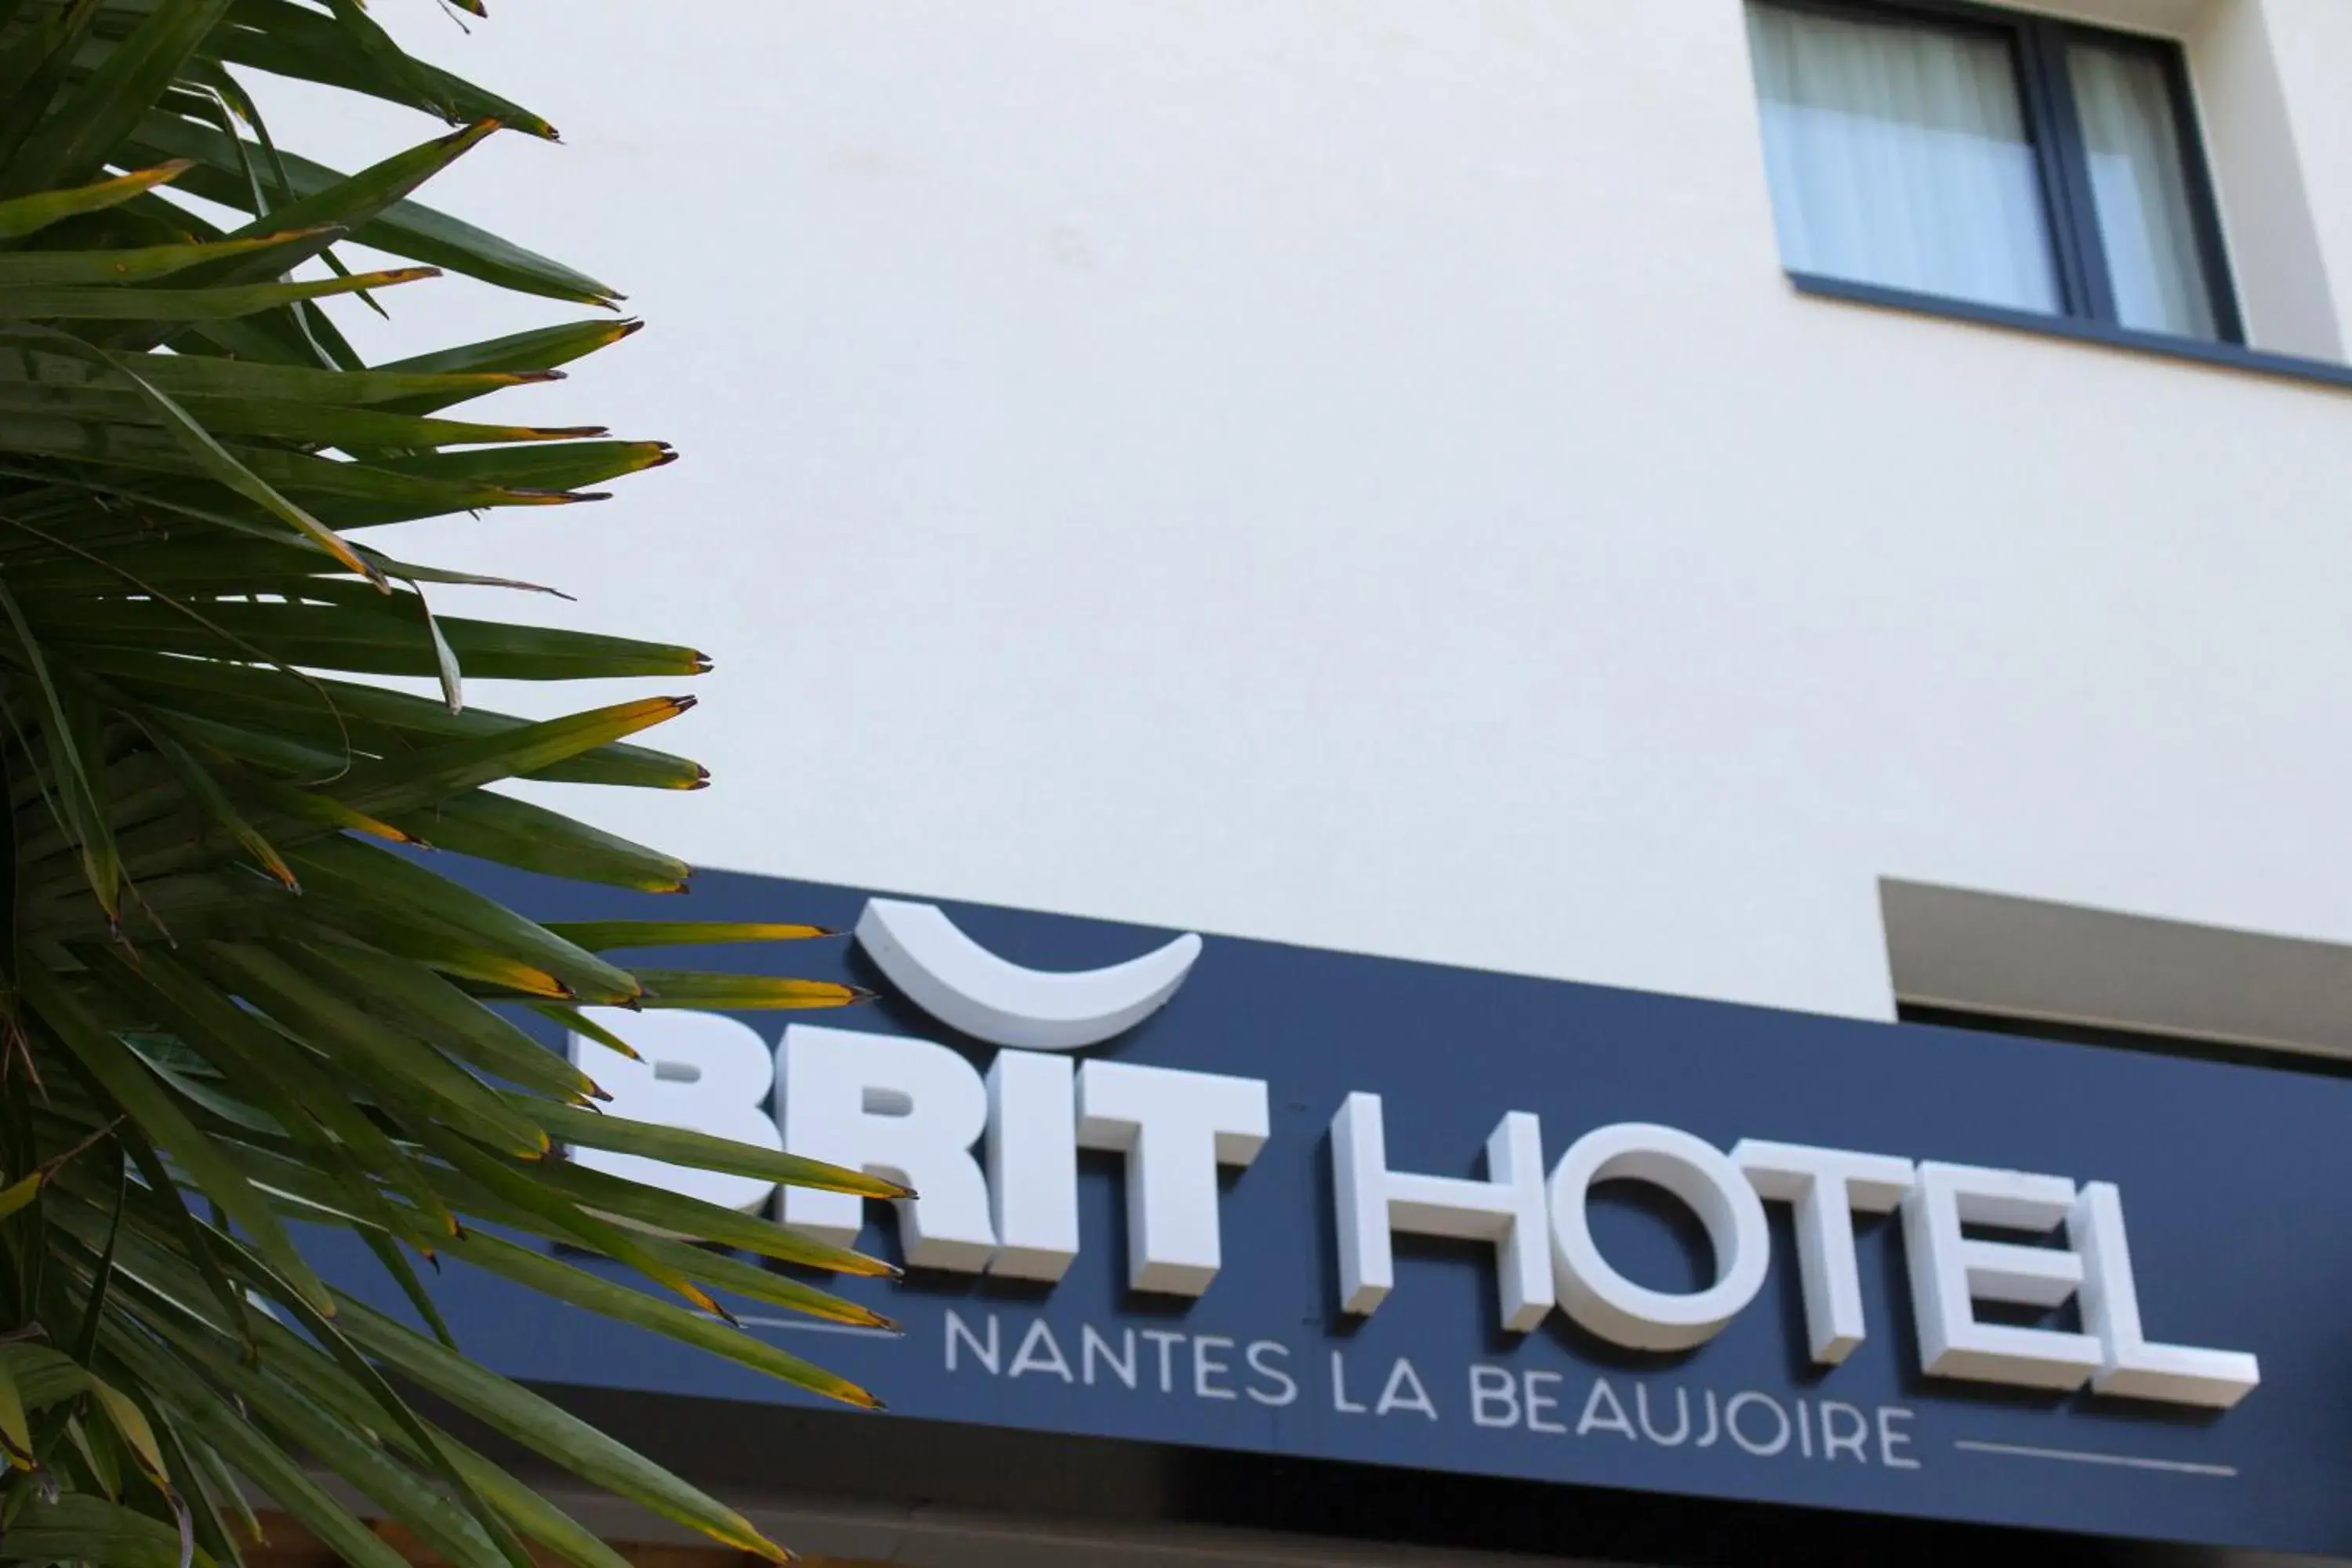 Property building in Brit Hotel Nantes La Beaujoire - L'Amandine